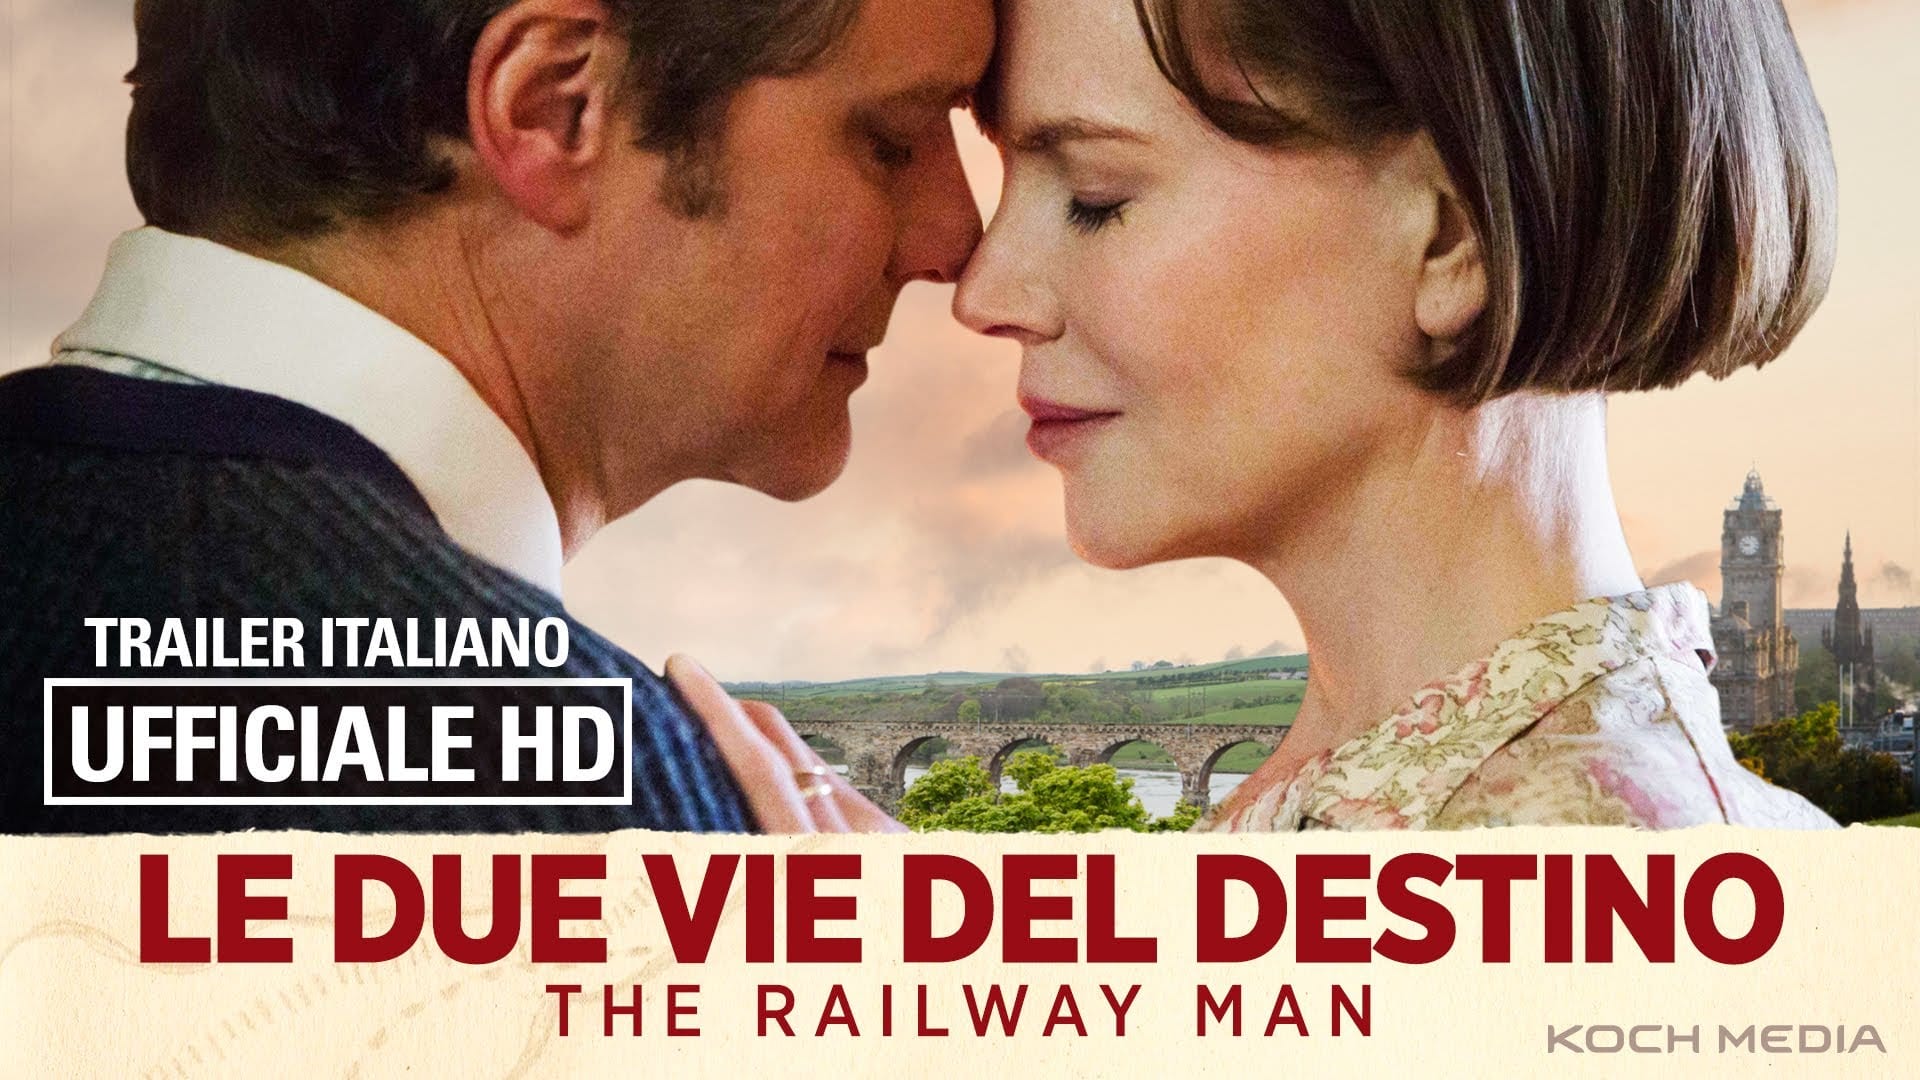 Nicole Kidman e Colin Firth in "Le due vie del destino The Railway Man"